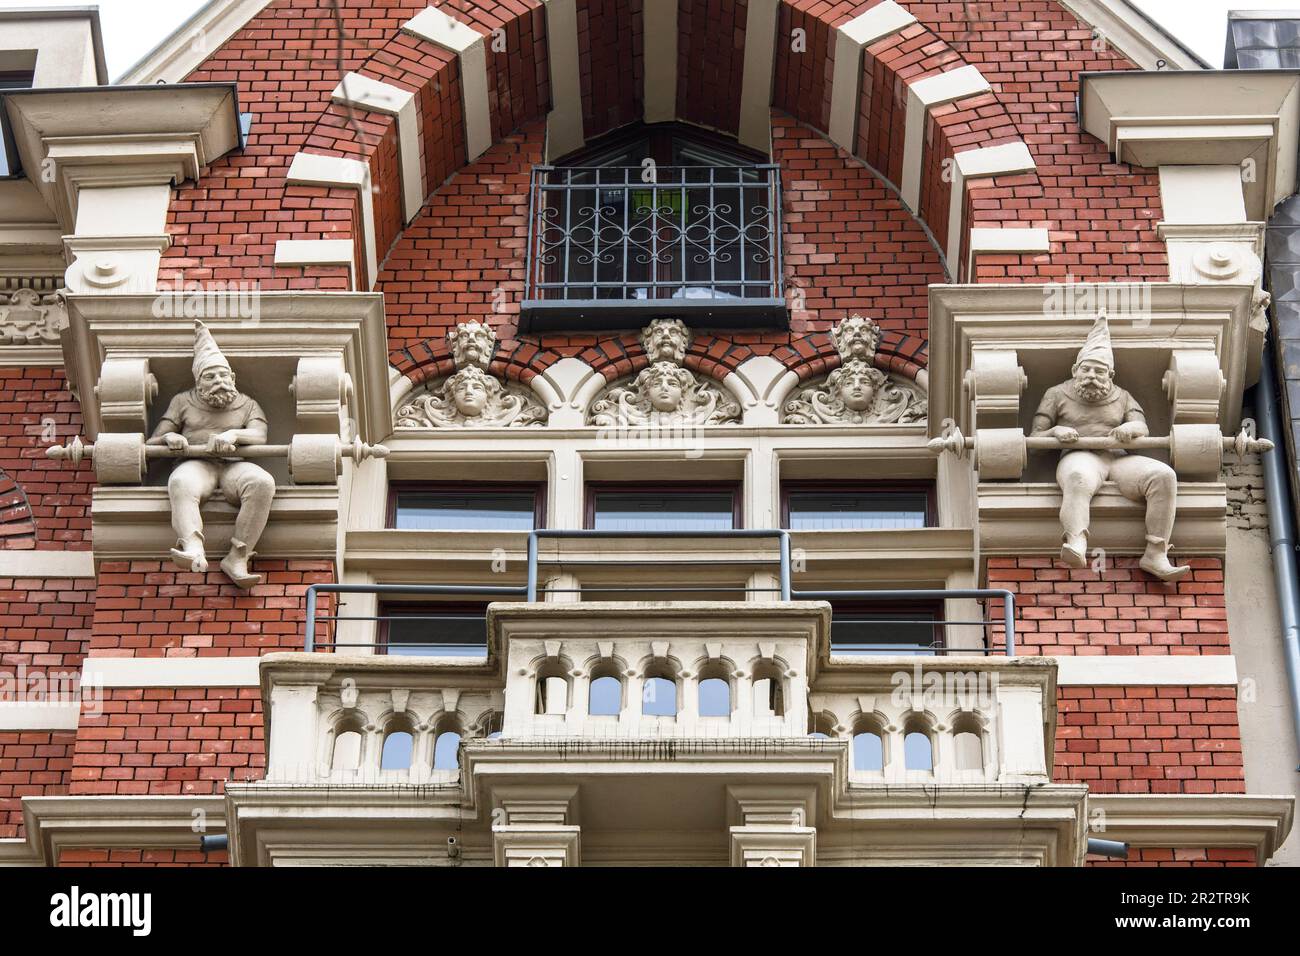 Heinzemaennchen Gnom an der Fassade eines alten Gebäudes in Hansaring, Köln. Heinzemaennchen Skulpturen an der Fassade eines Altbaus am Han Stockfoto